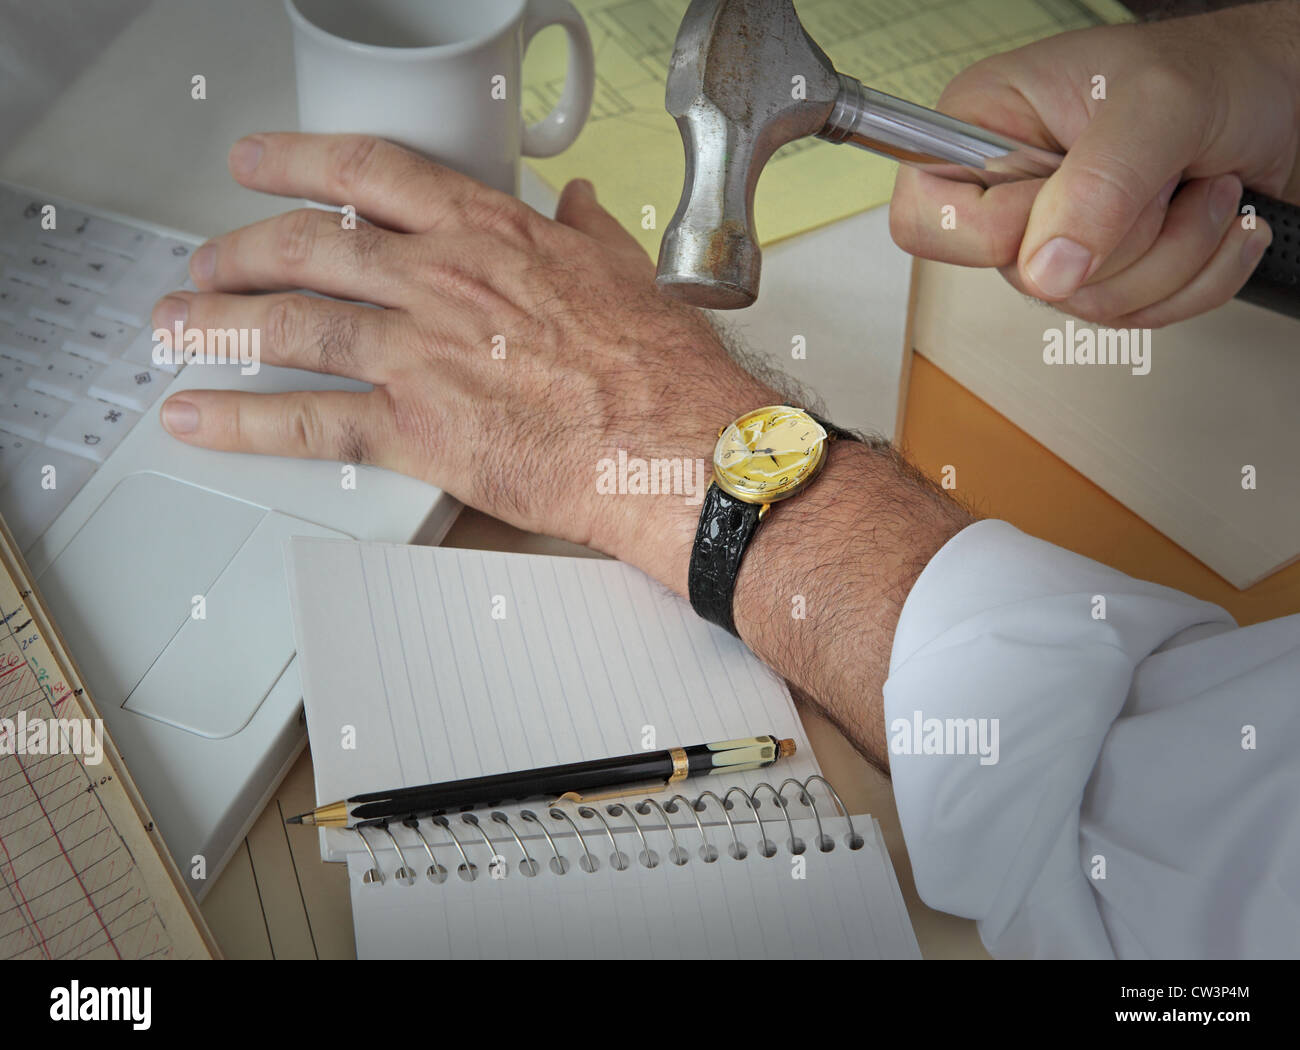 Su mano izquierda está tocando el teclado mientras su mano derecha está  golpeando su reloj de pulsera, un lápiz y documentos están repartidos  Fotografía de stock - Alamy